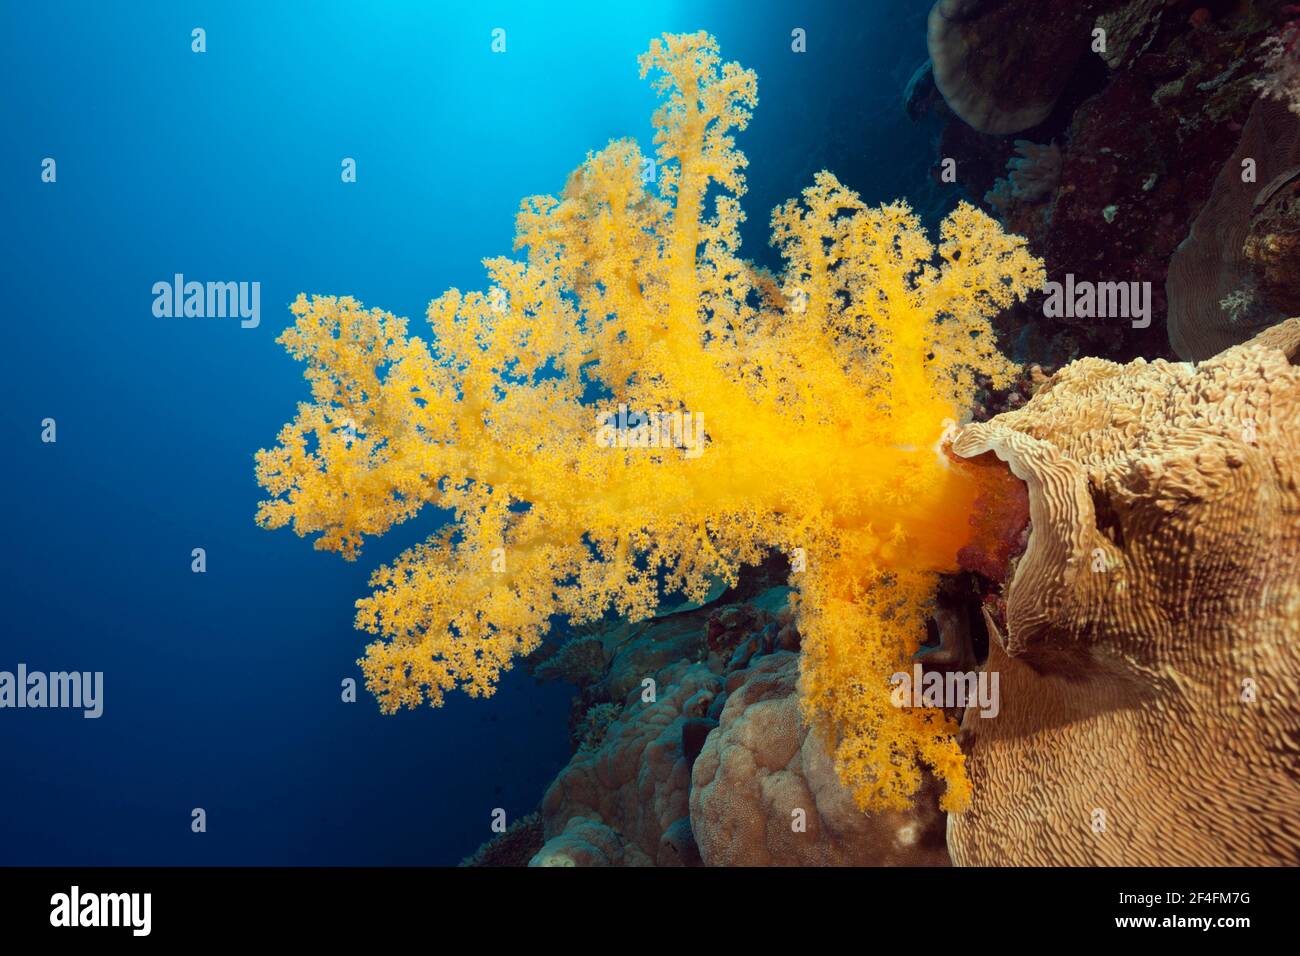 Gelbe Weichkoralle (Dendronephthya klunzingeri), Fischadler Riff, Korallenmeer, Australien Stockfoto